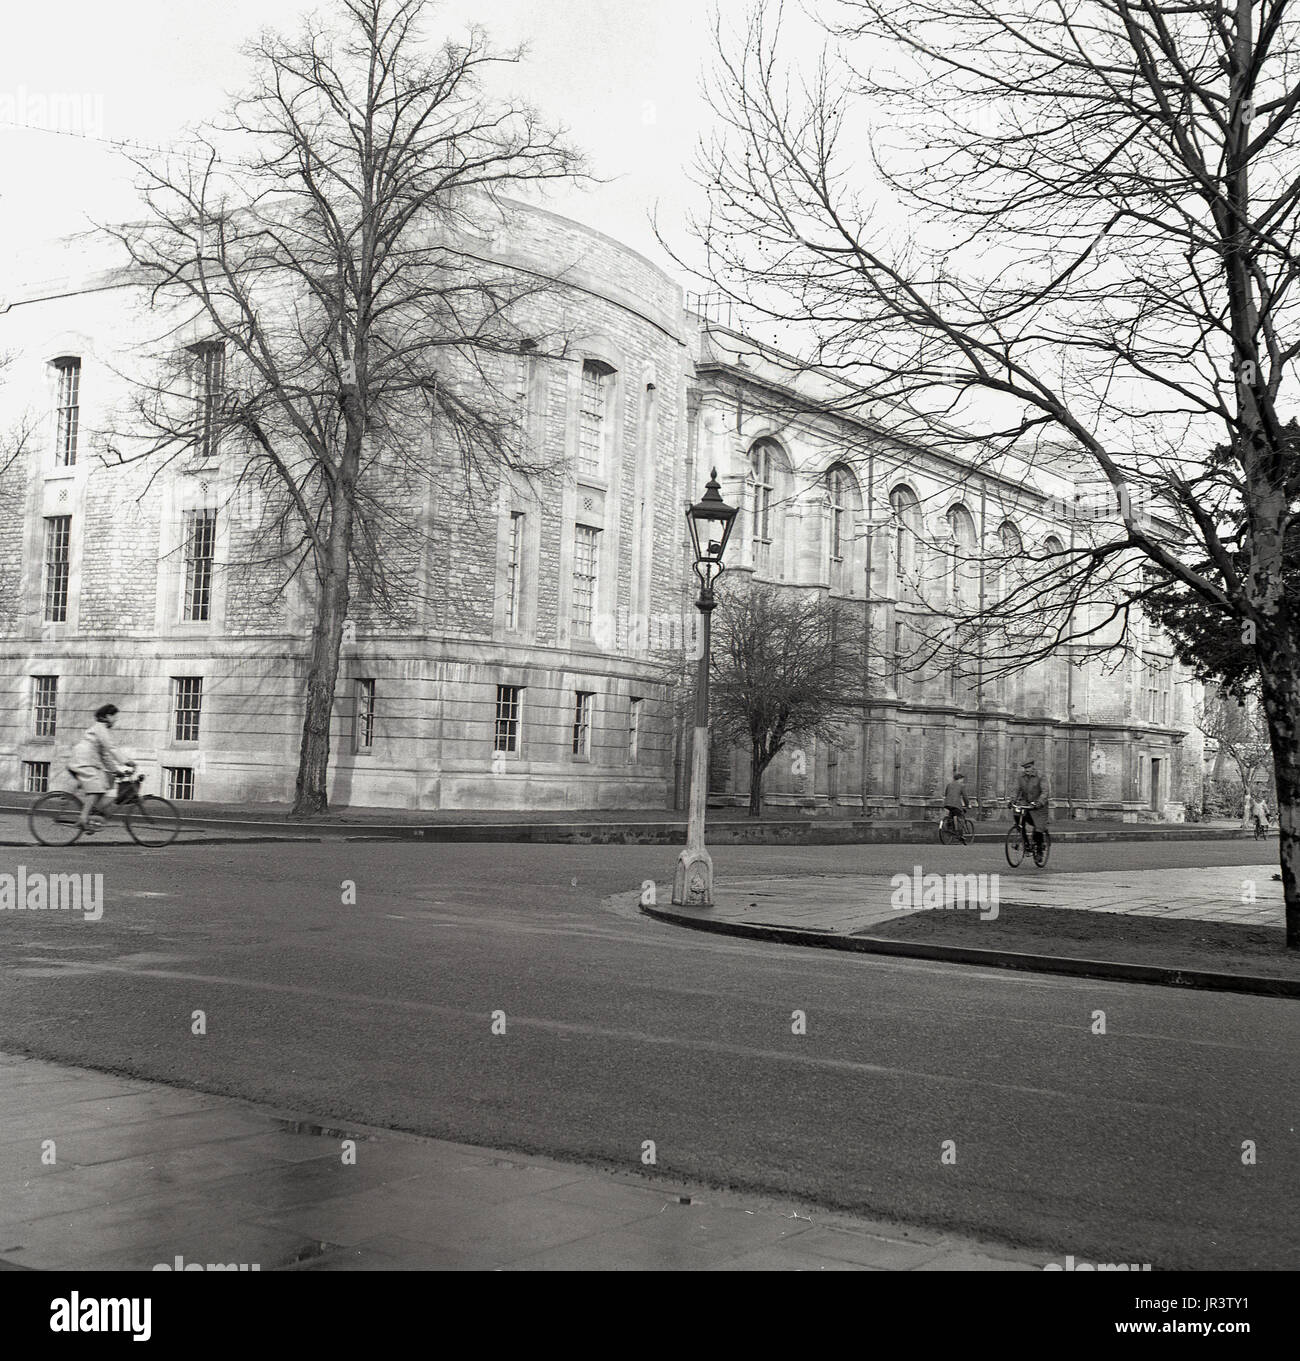 1948, historique, photo de l'extérieur de la Bibliothèque Scientifique Radcliffe à l'Université d'Oxford, Oxford, Angleterre, Royaume-Uni, montrant l'angle sud-ouest à l'Est de la jonction à Parcs Road. Banque D'Images